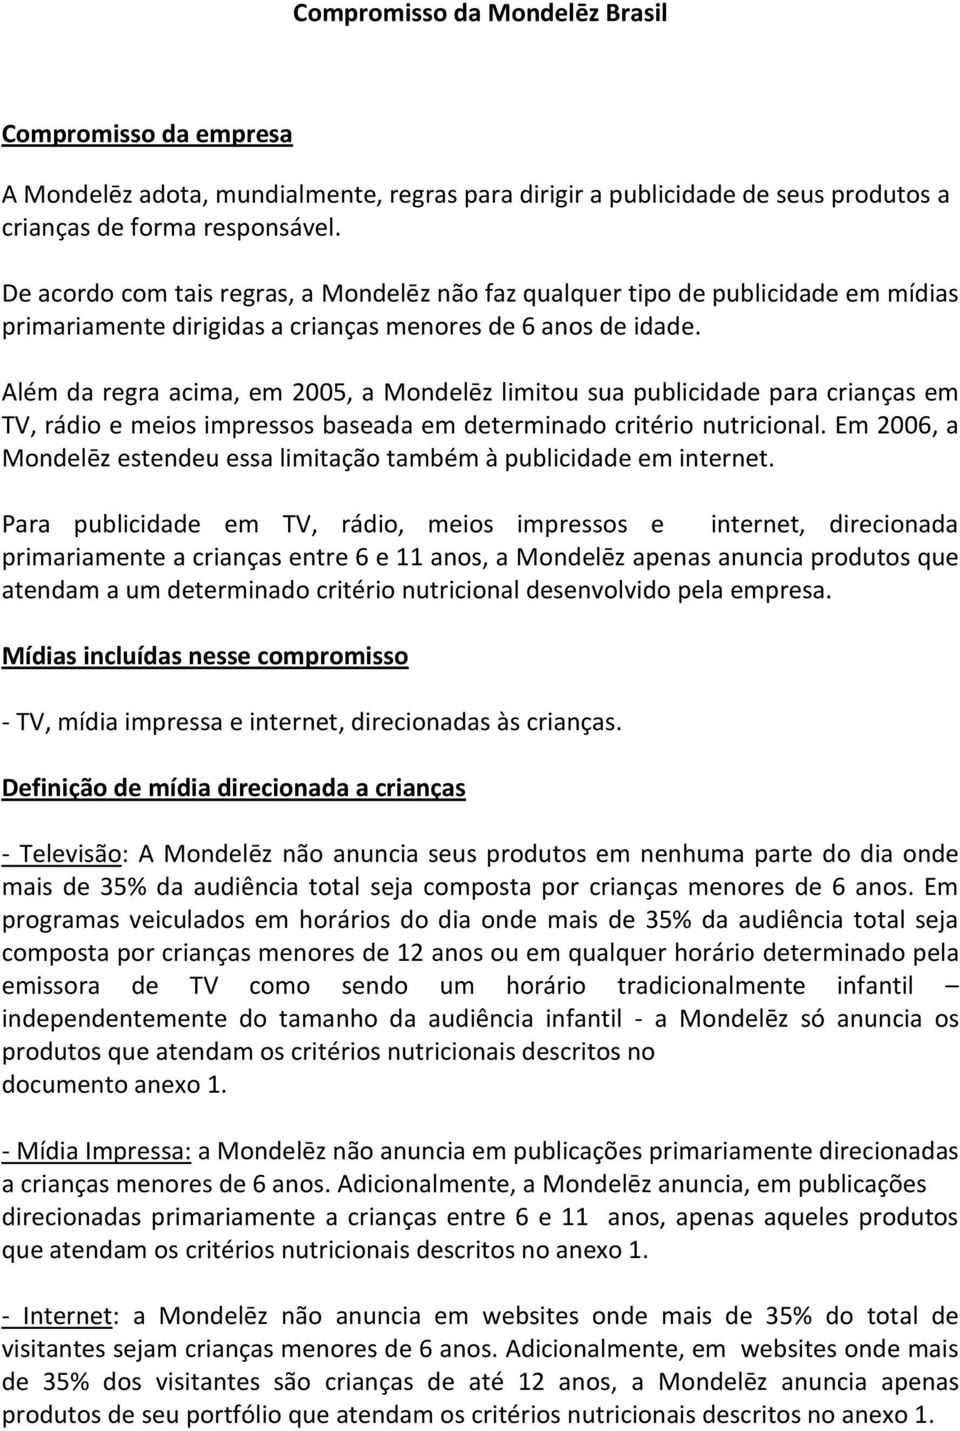 Além da regra acima, em 2005, a Mondelēz limitou sua publicidade para crianças em TV, rádio e meios impressos baseada em determinado critério nutricional.